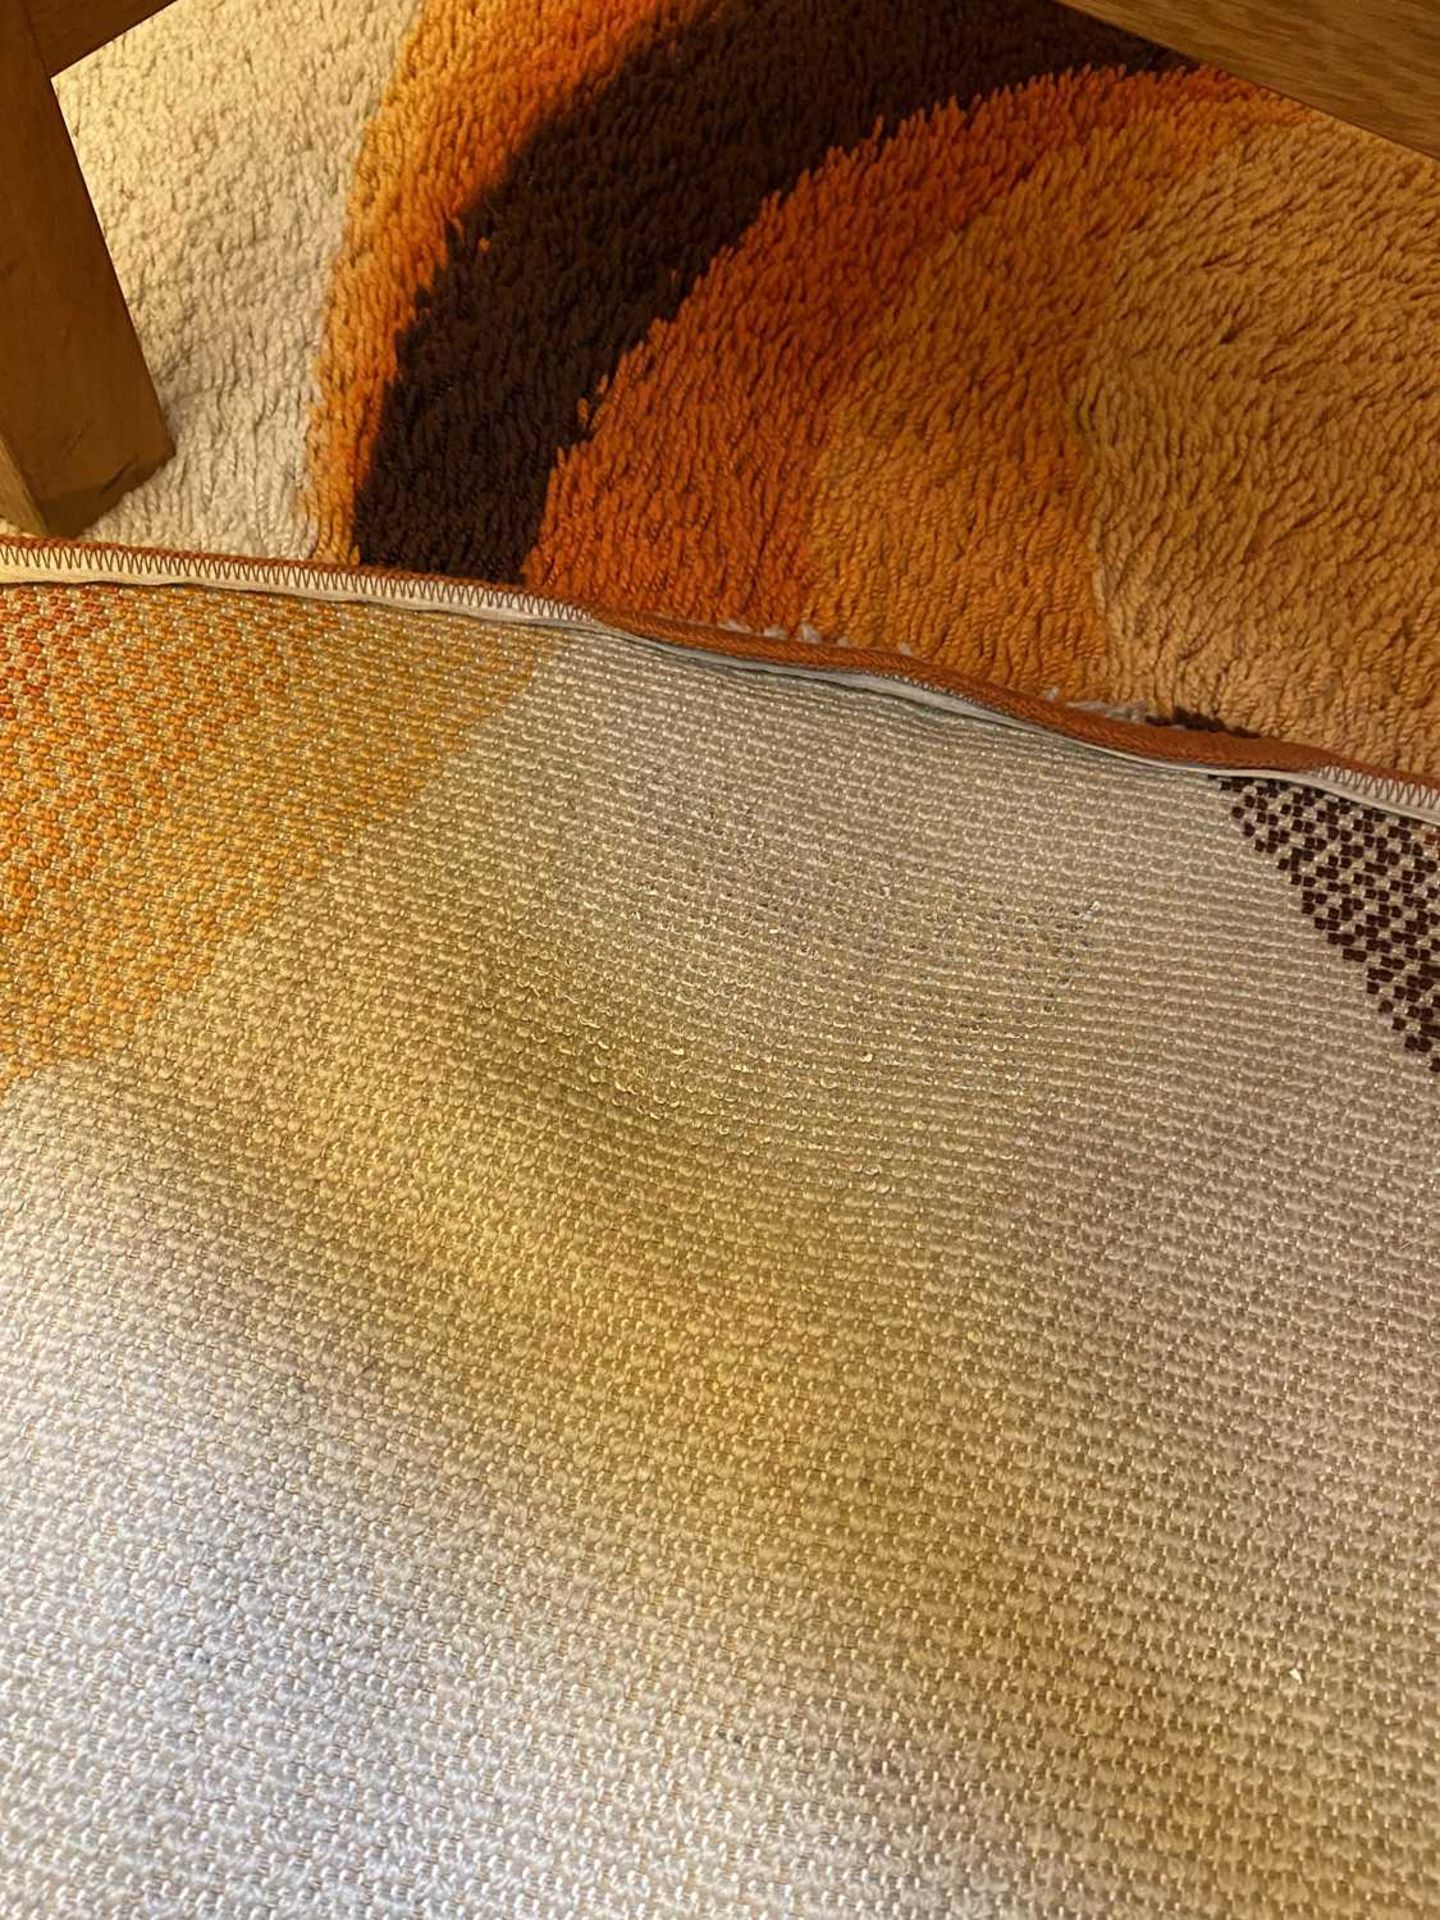 An orange, brown and beige wool carpet, - Bild 7 aus 7